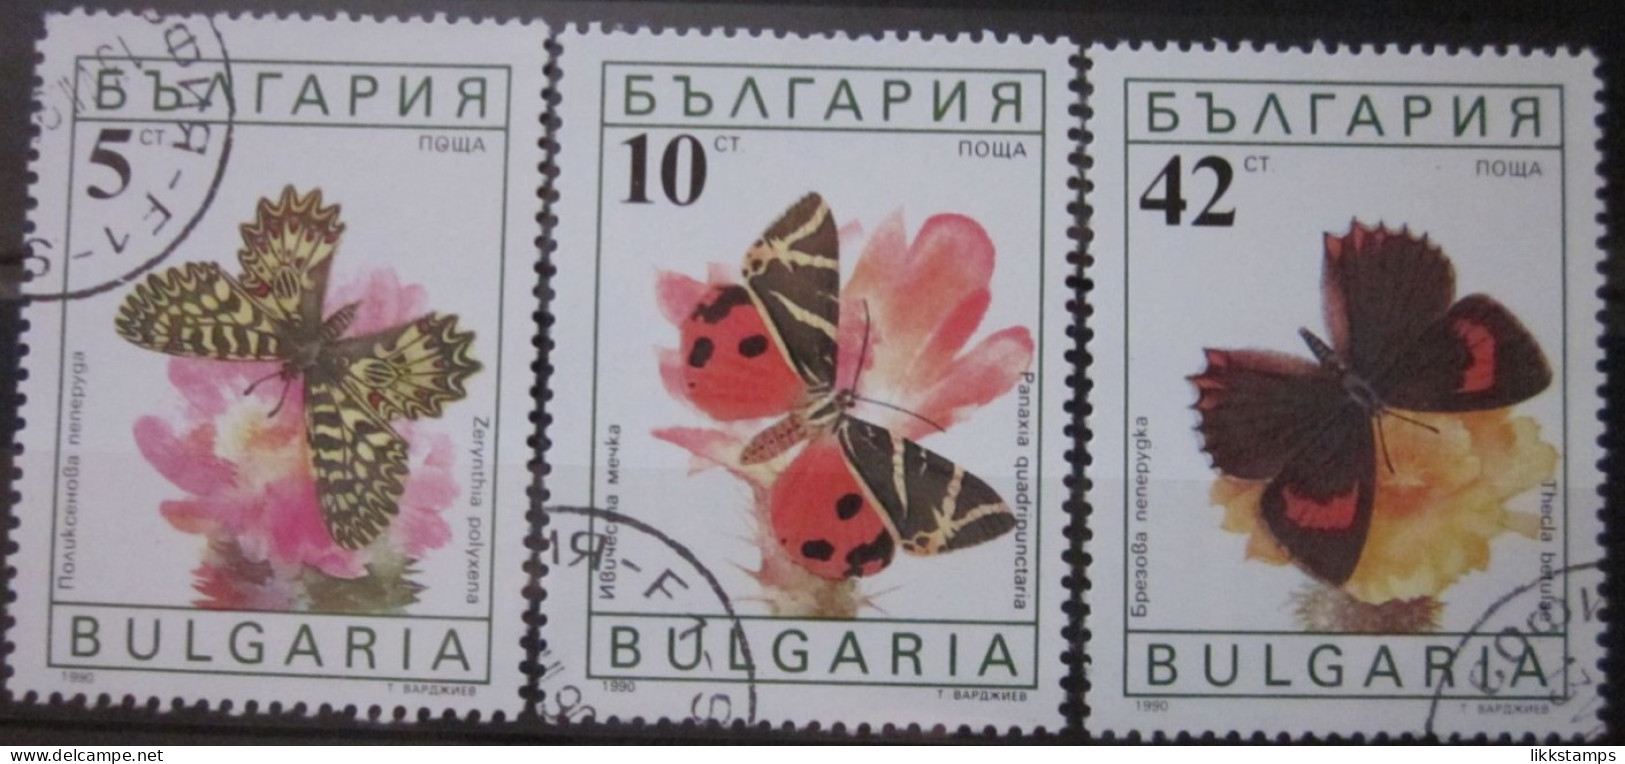 BULGARIA 1990 ~ S.G. 3699, 3700 & 3703, ~ BUTTERFLIES AND MOTHS. ~  VFU #02959 - Usati